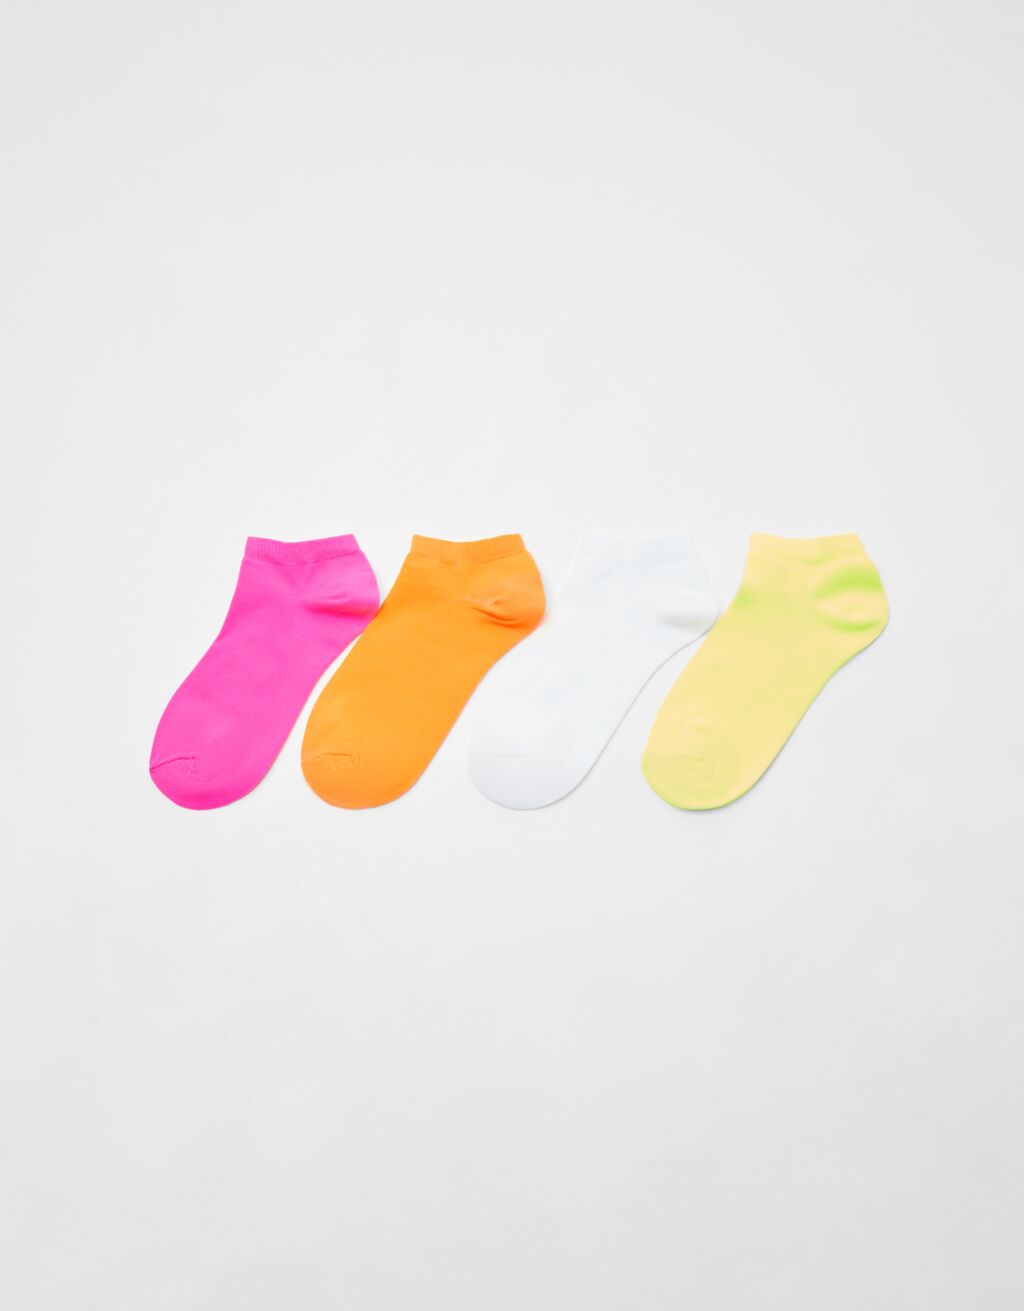 Σετ με 4 ζεύγη κάλτσες σε φθορίζοντα χρώματα